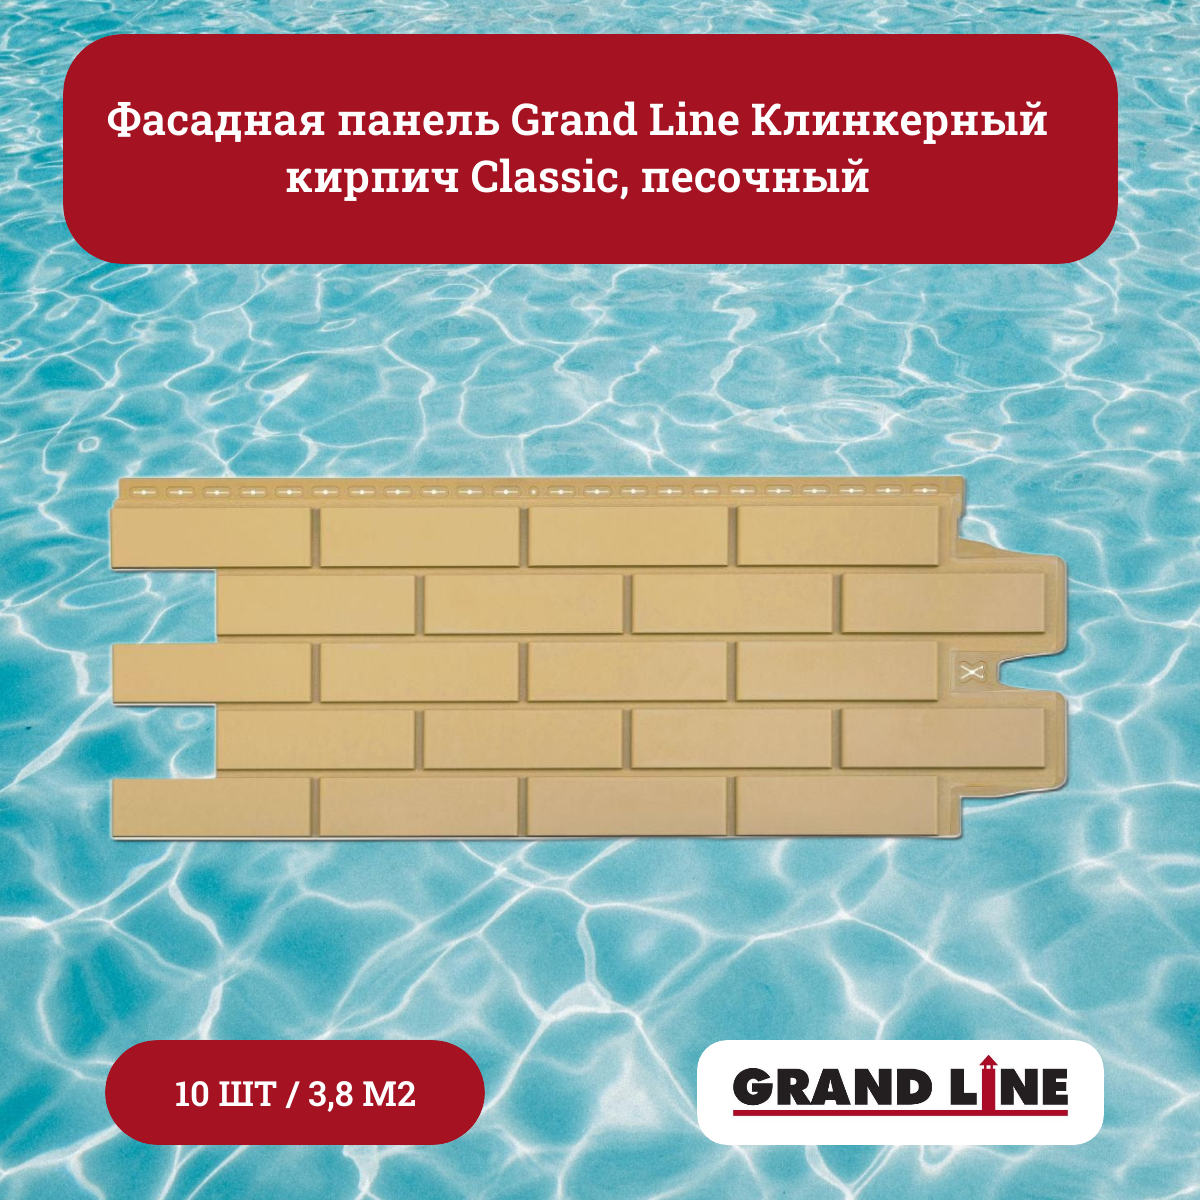 Фасадная панель Grand Line Клинкерный кирпич Classic песочный (10 шт.)